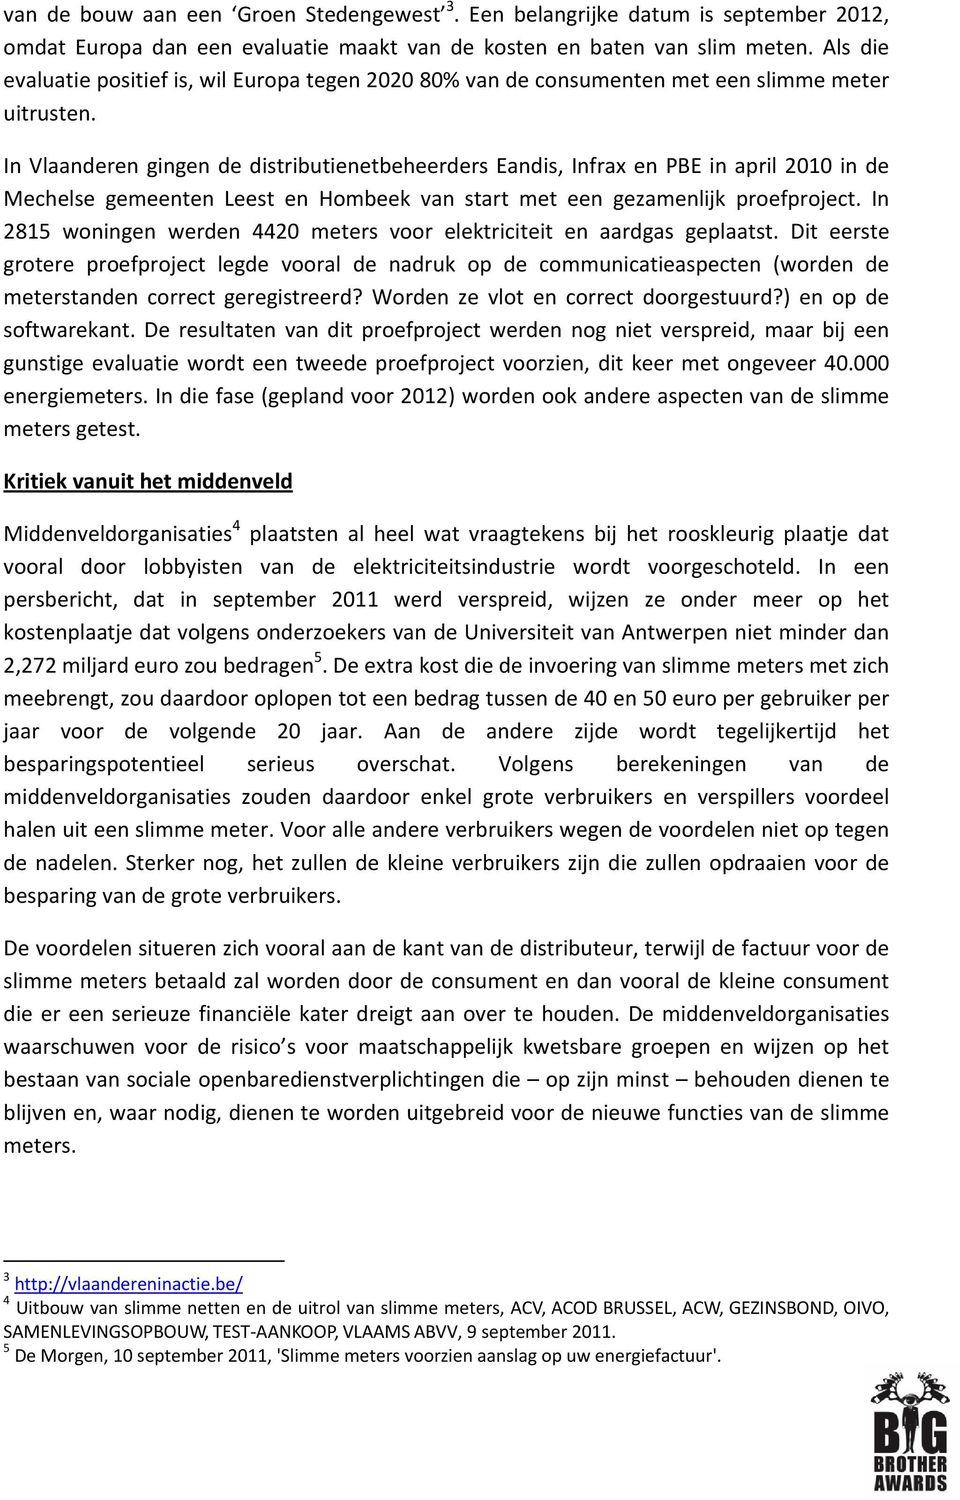 In Vlaanderen gingen de distributienetbeheerders Eandis, Infrax en PBE in april 2010 in de Mechelse gemeenten Leest en Hombeek van start met een gezamenlijk proefproject.